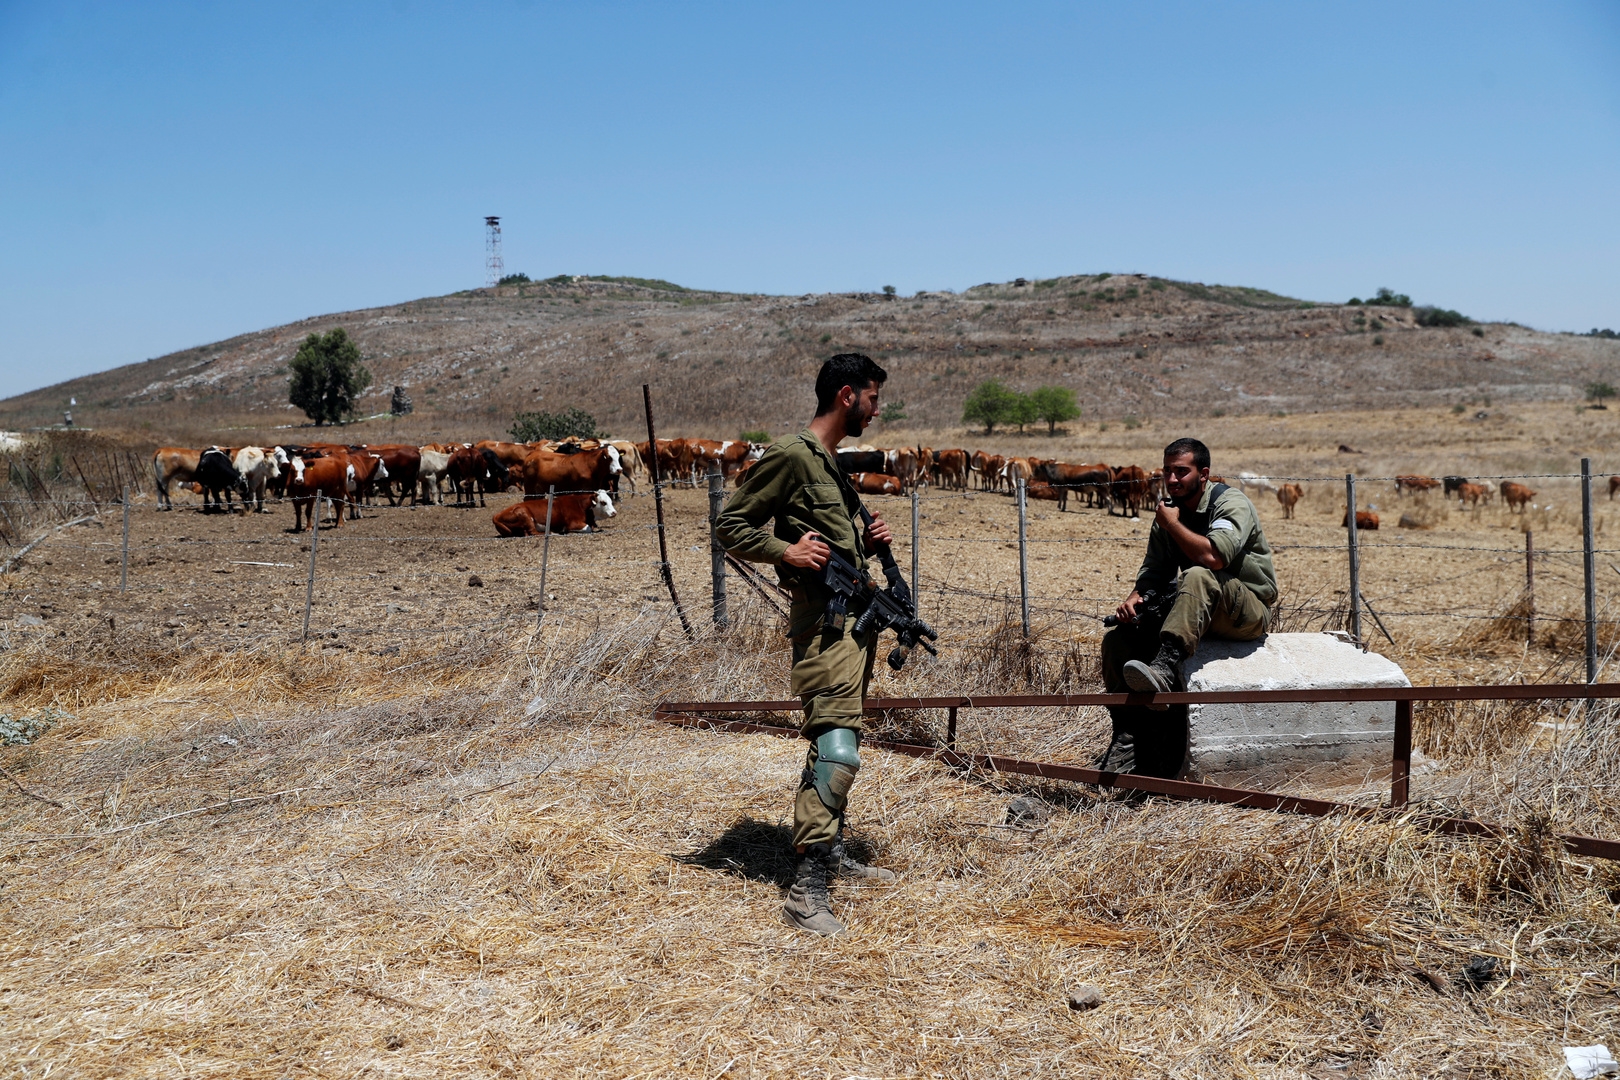 قوات الاحتلال الإسرائيلي تختطف راعي أغنام في قرية بريقة بريف القنيطرة الجنوبي